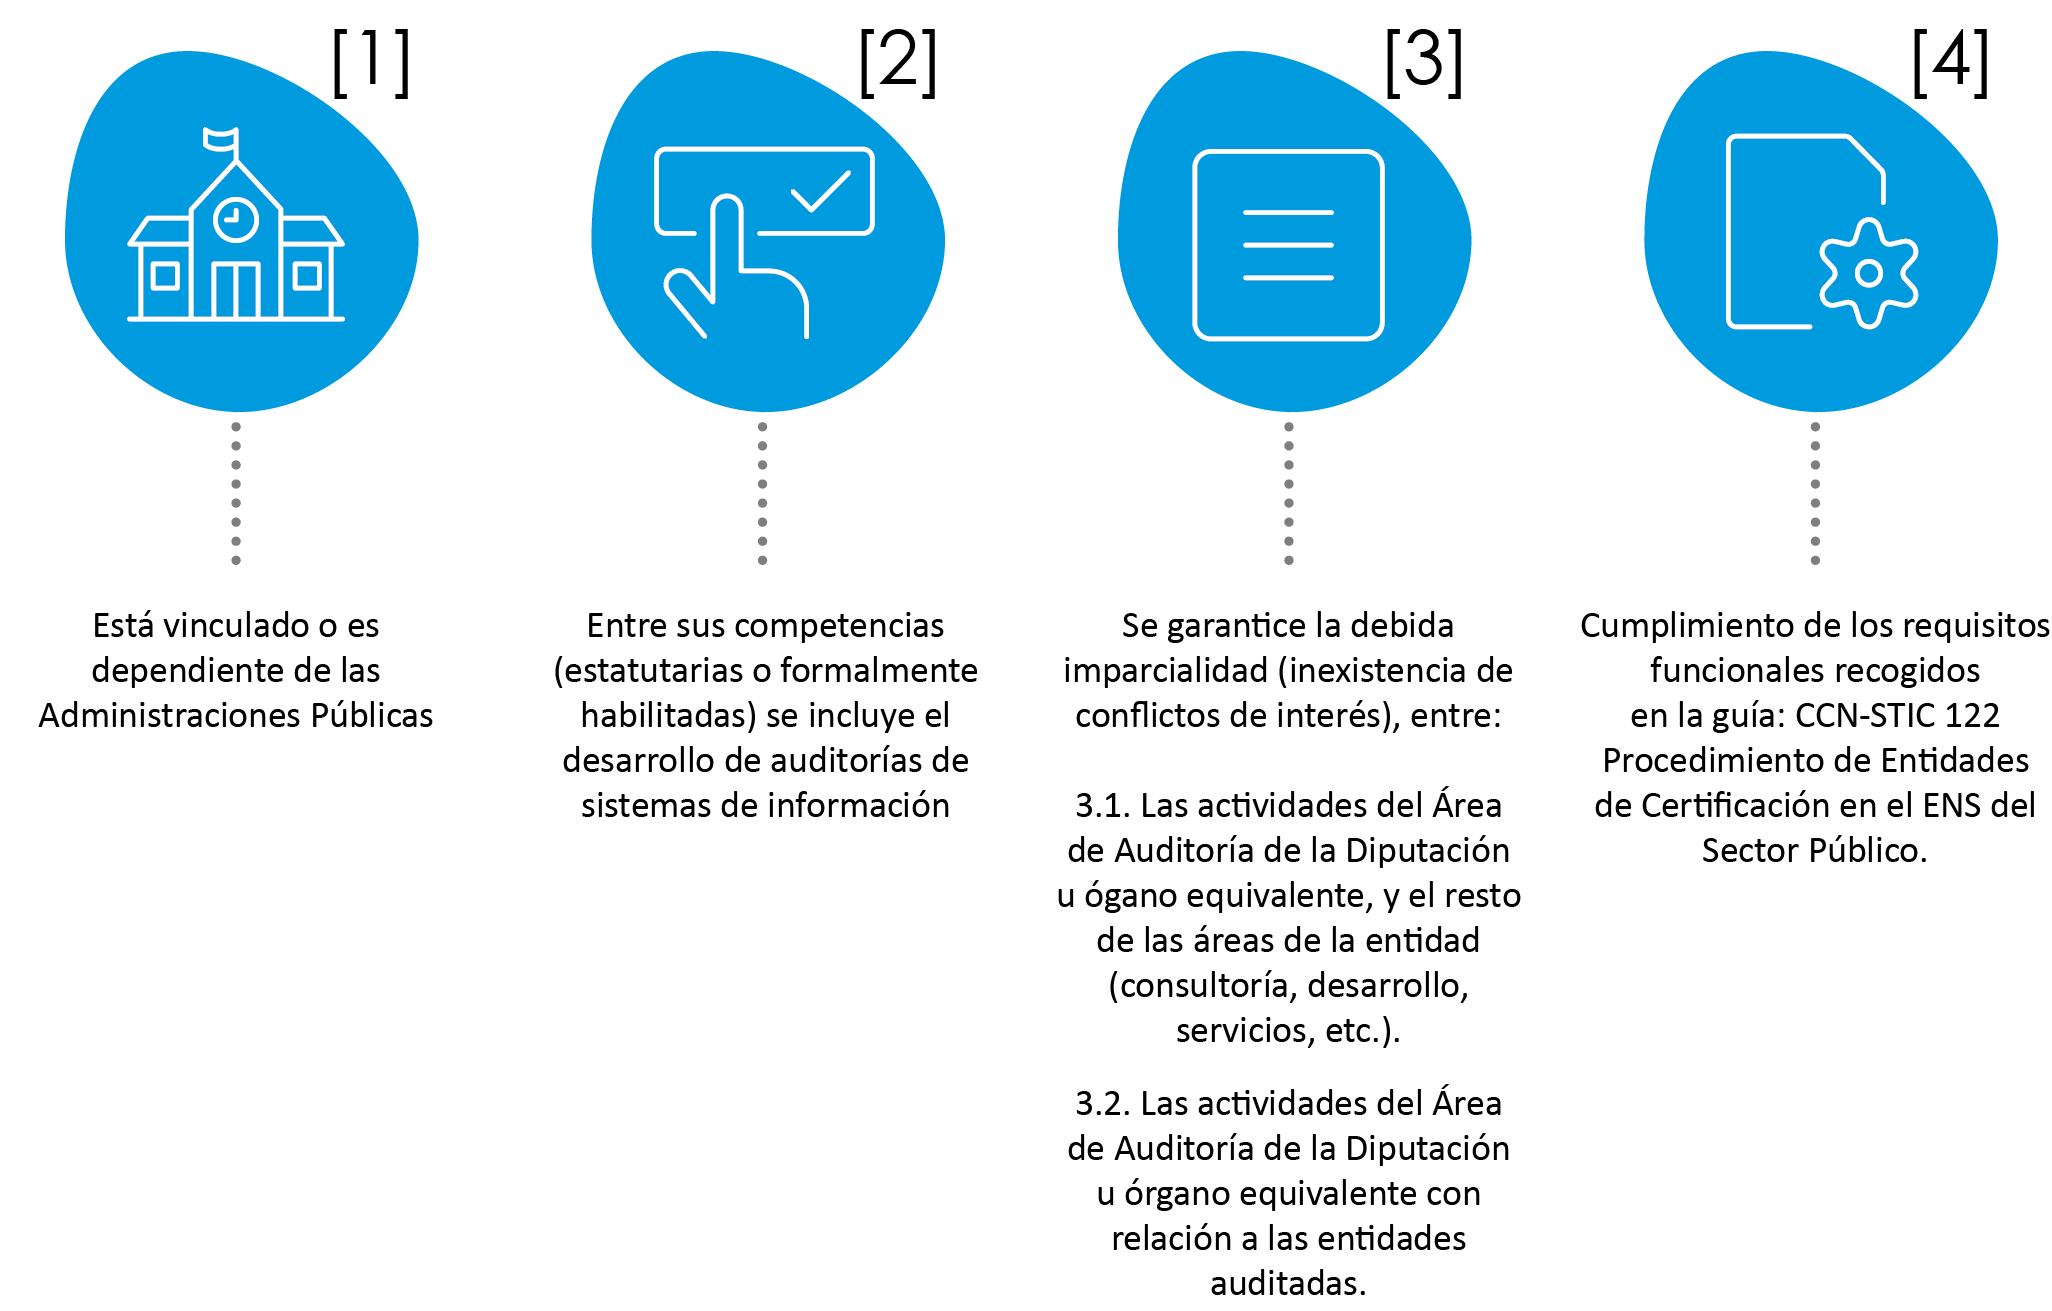 Diputación u Órgano equivalente como entidad de certificación del ENS